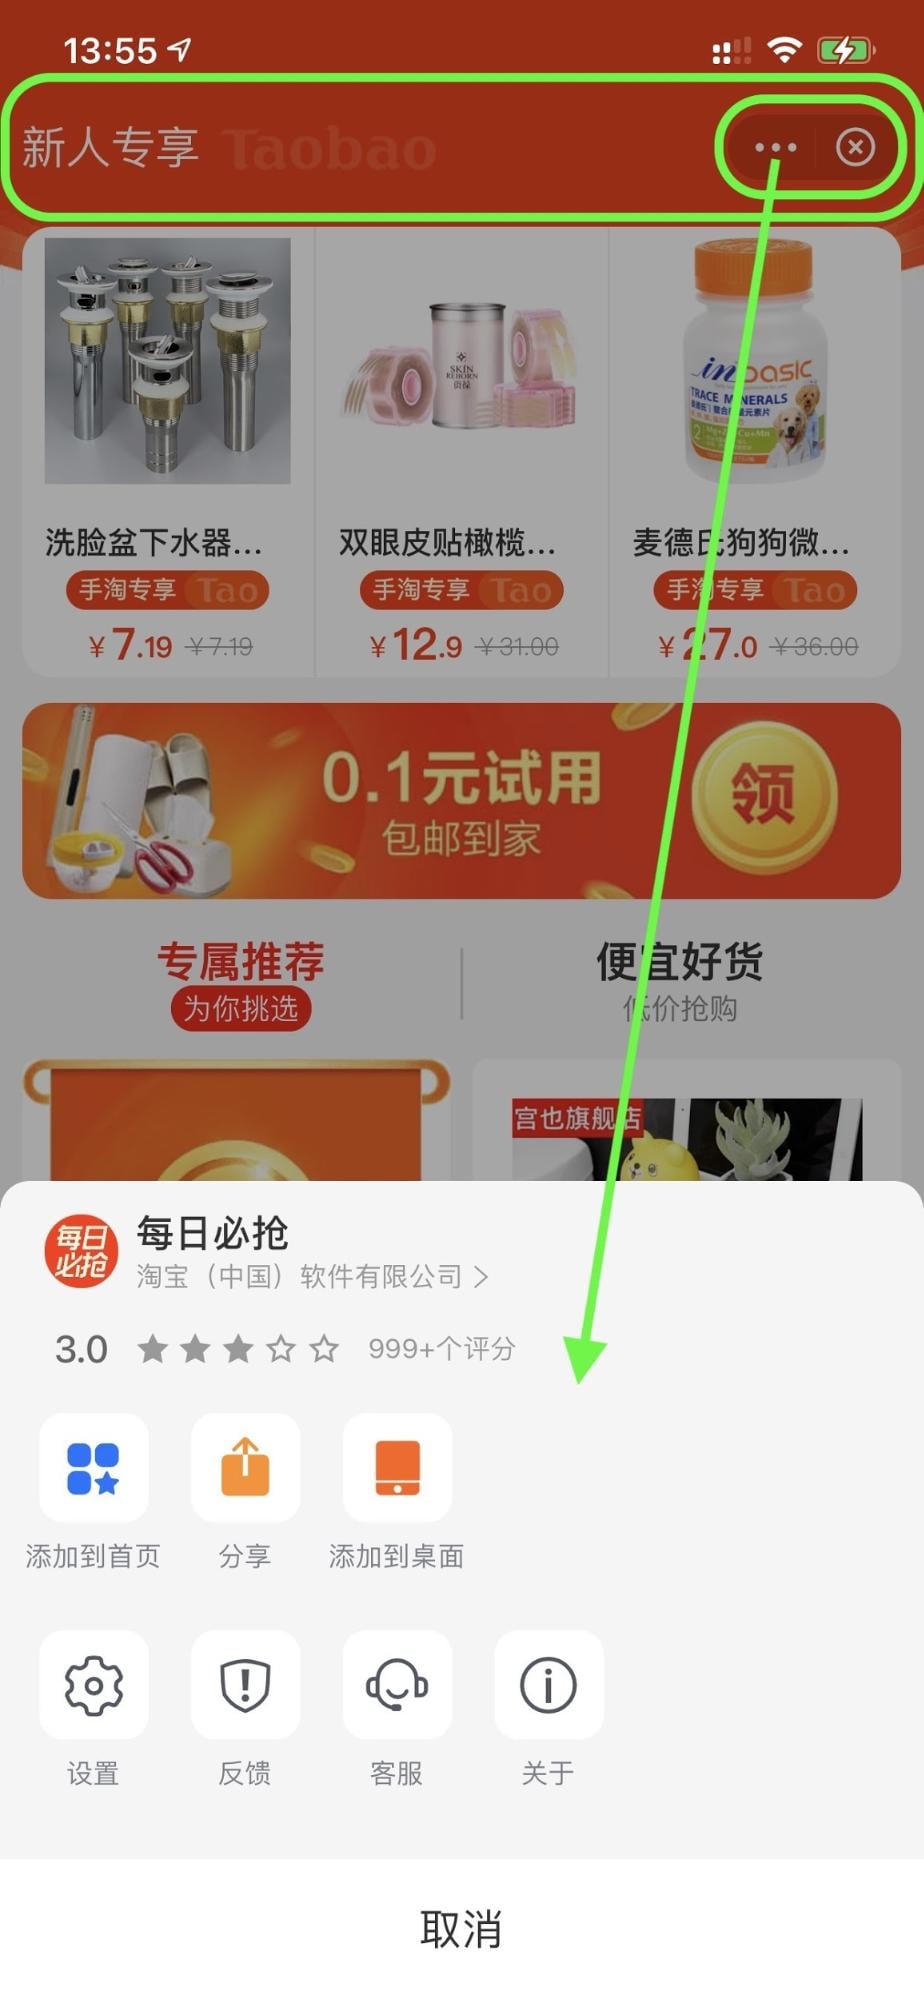 Суперприложение Alipay, использующее мини-приложение для покупок с выделенной верхней панелью, кнопкой меню действий и кнопкой закрытия. Откроется меню действий.